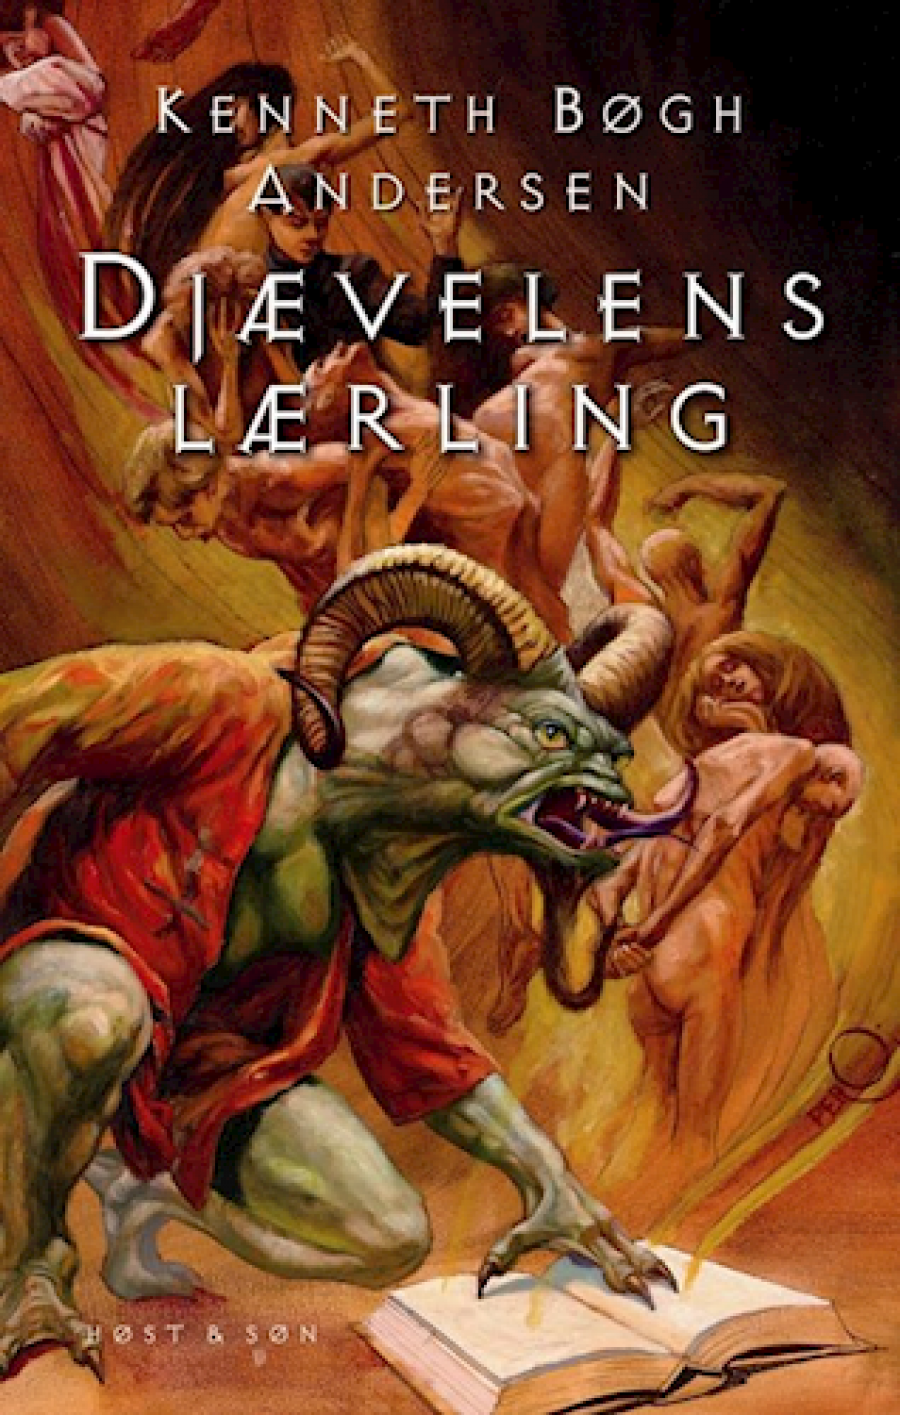 Forsiden af bogen "Djævelens lærling".